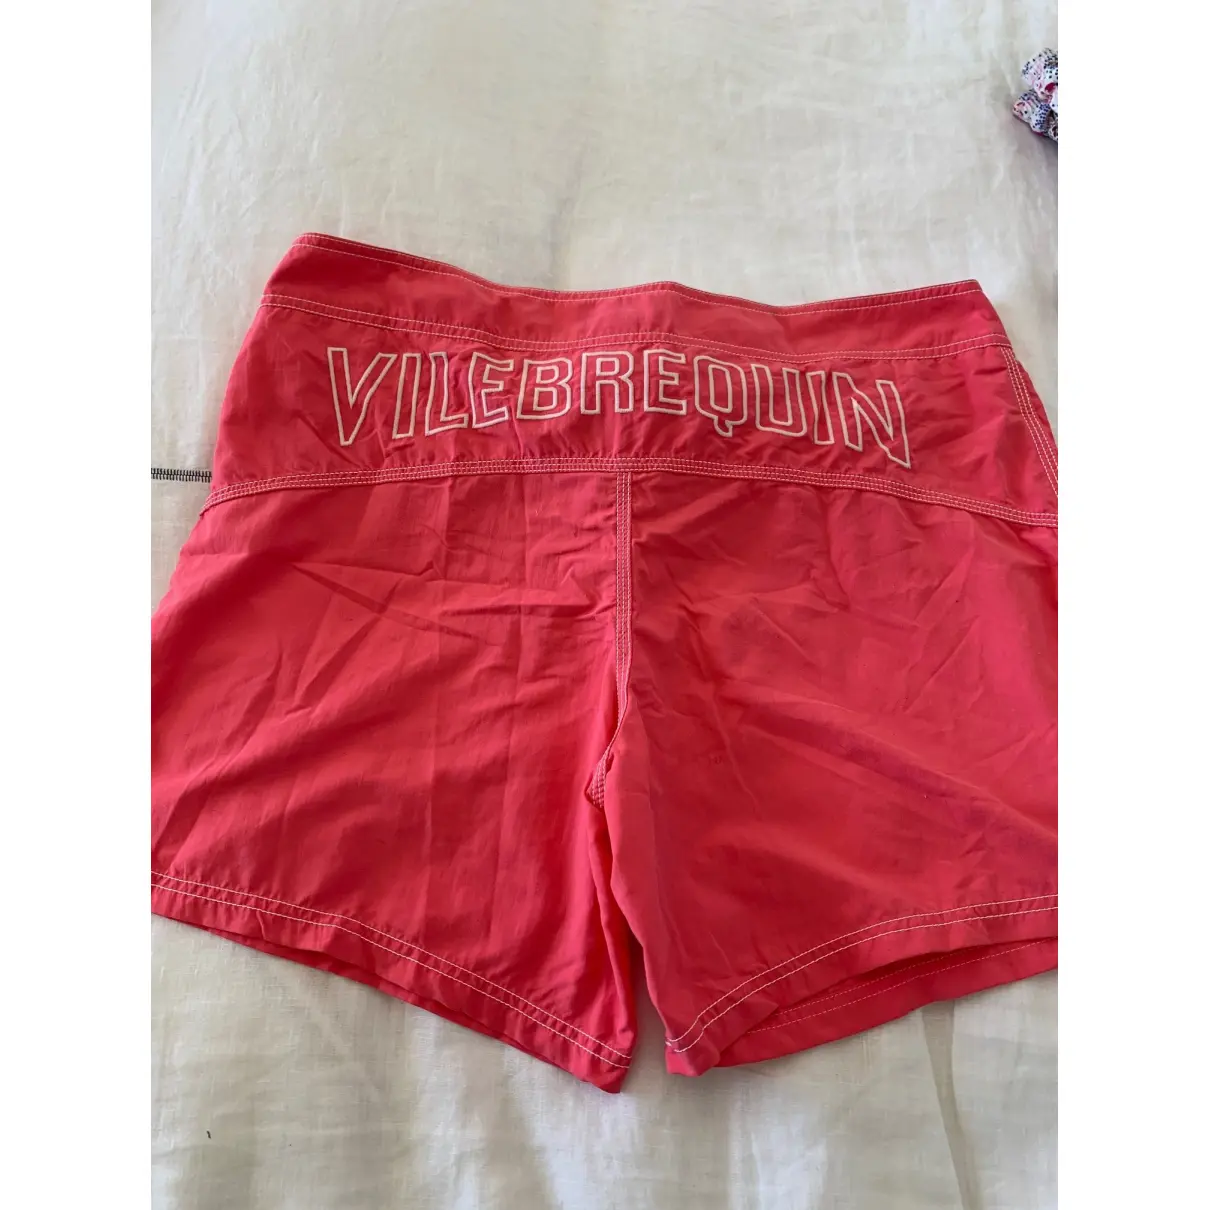 Buy Vilebrequin Swimwear online